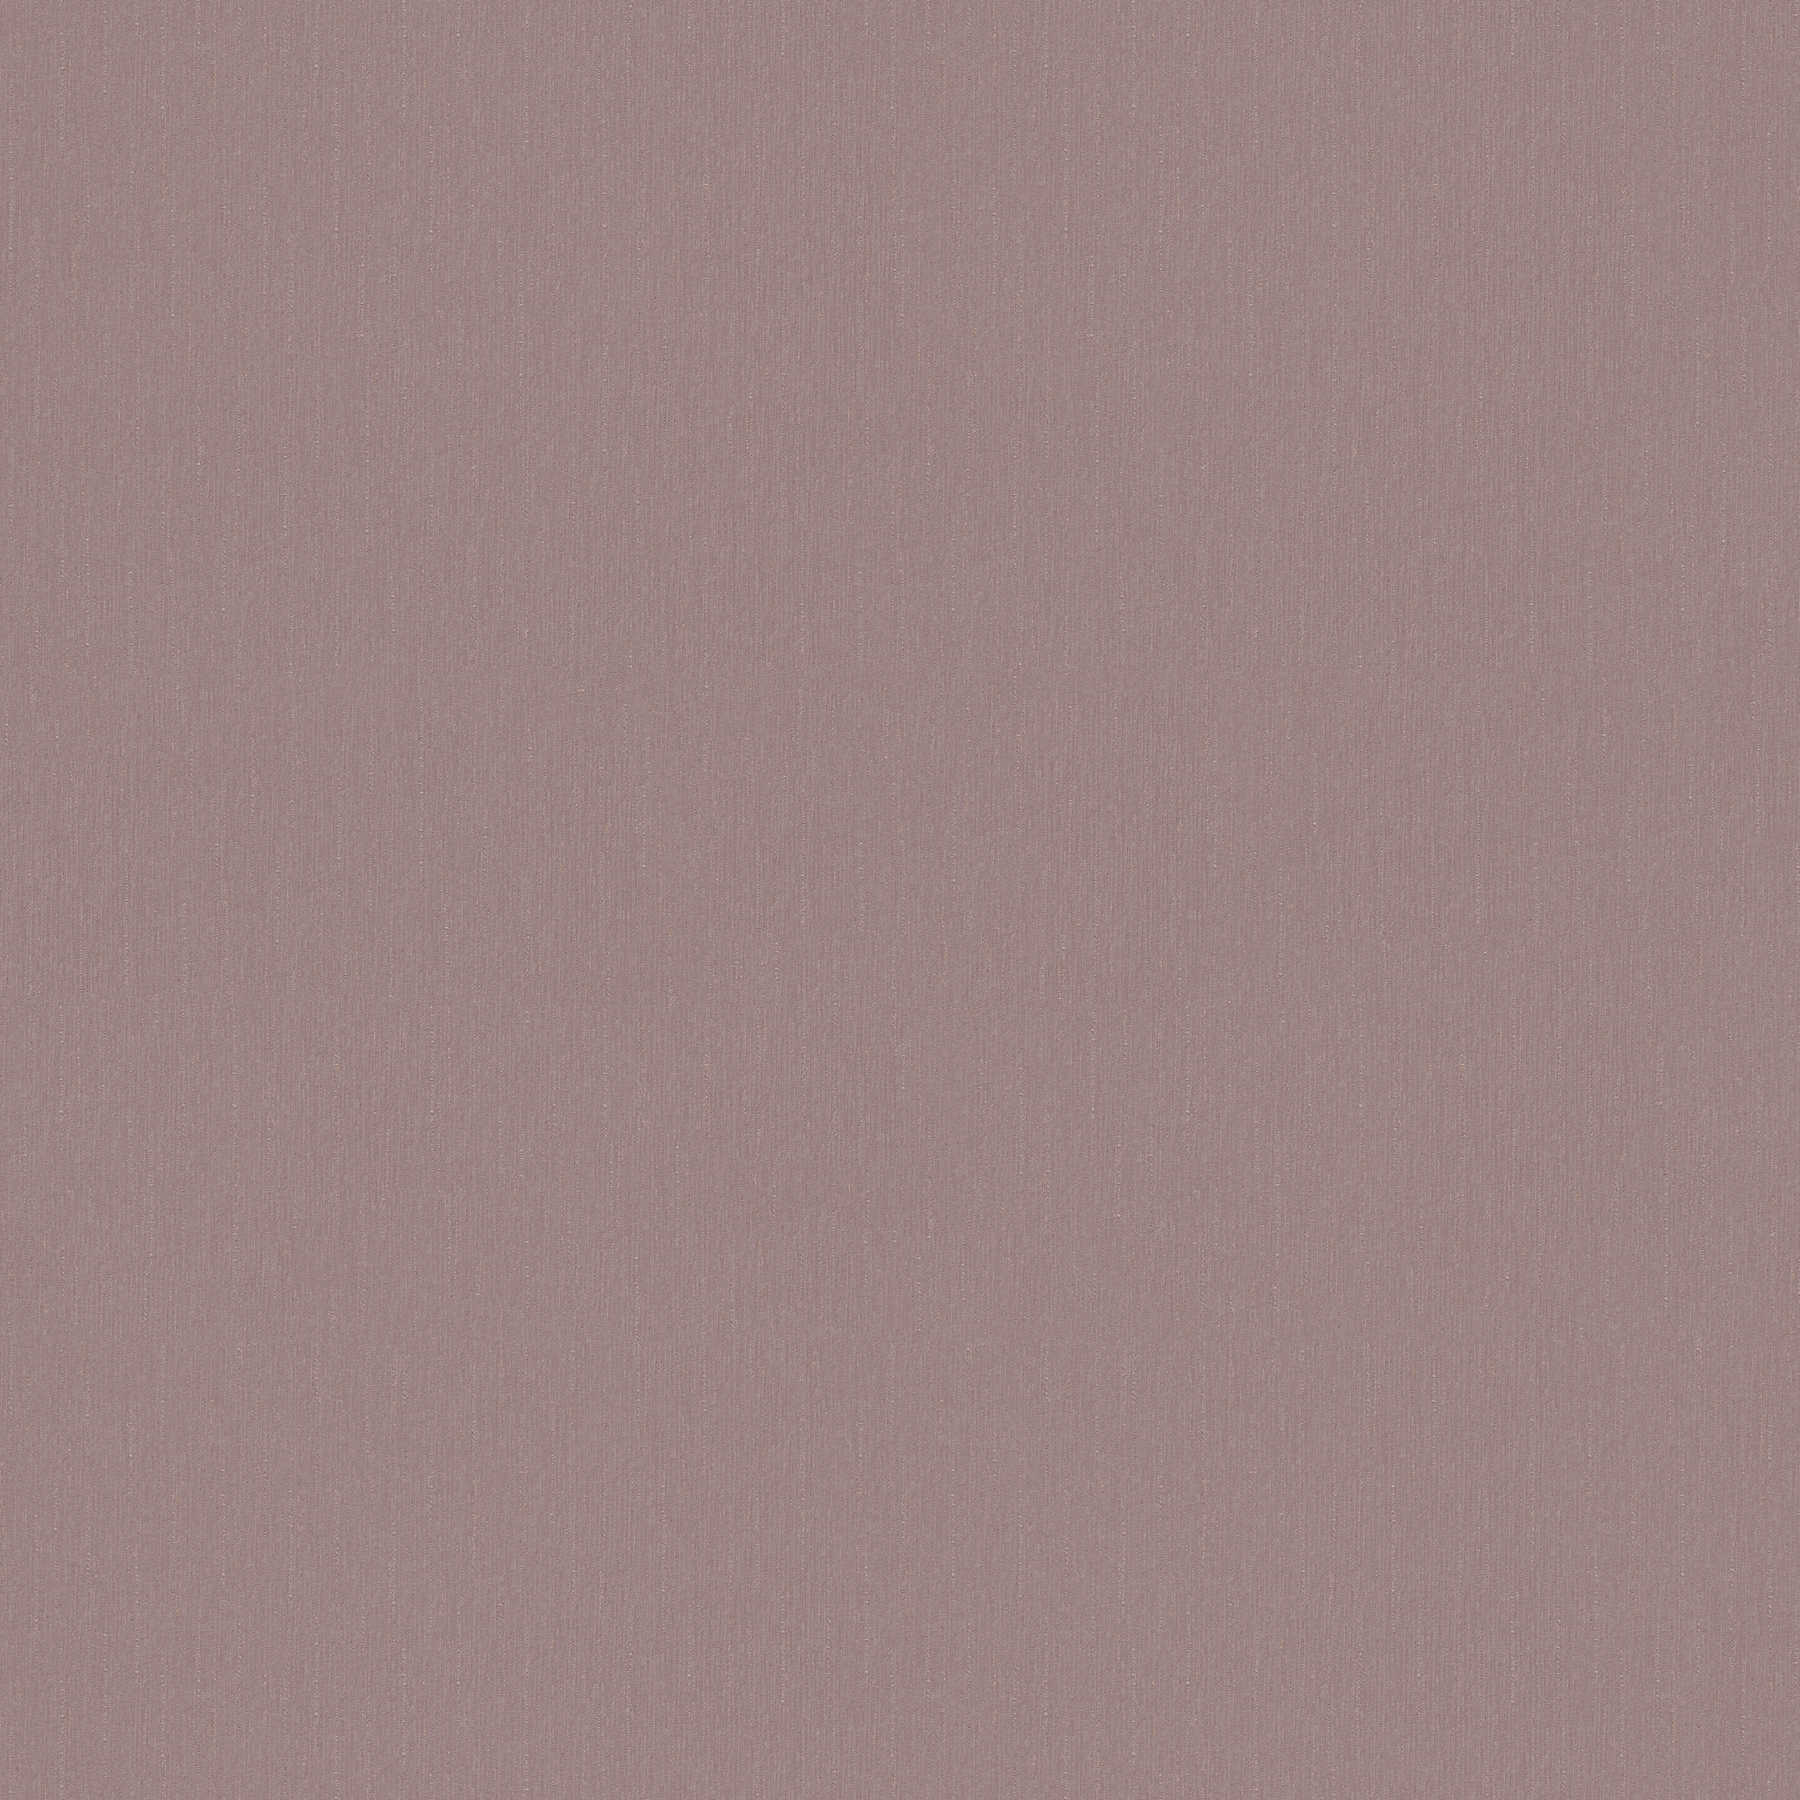 Wallpaper lilac grey monochrome & matte - grey, pink
